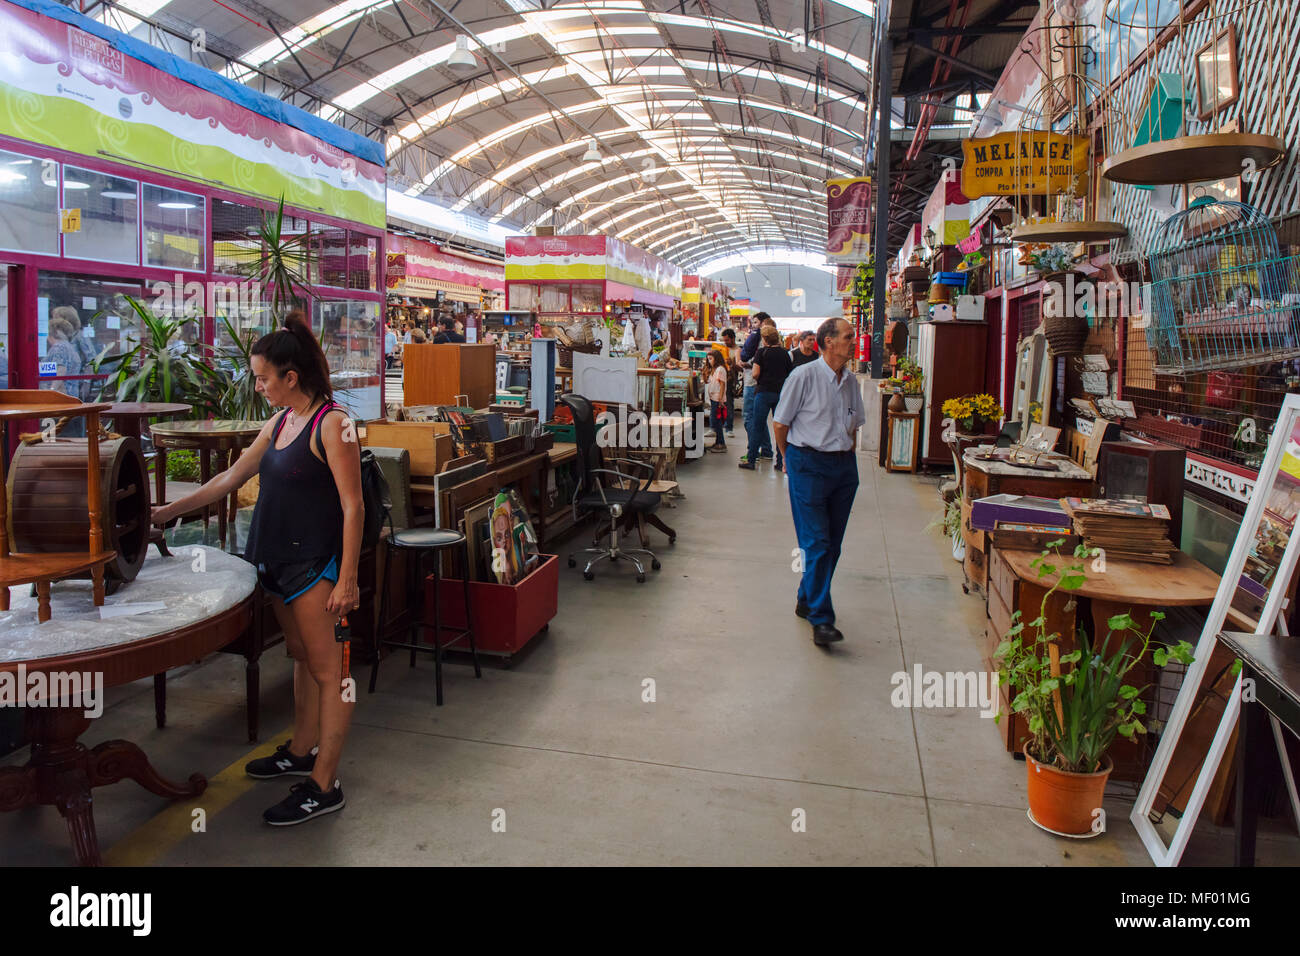 People visiting the 'Flea market' (Mercado de las Pulgas) in Buenos Aires, Argentina. Stock Photo